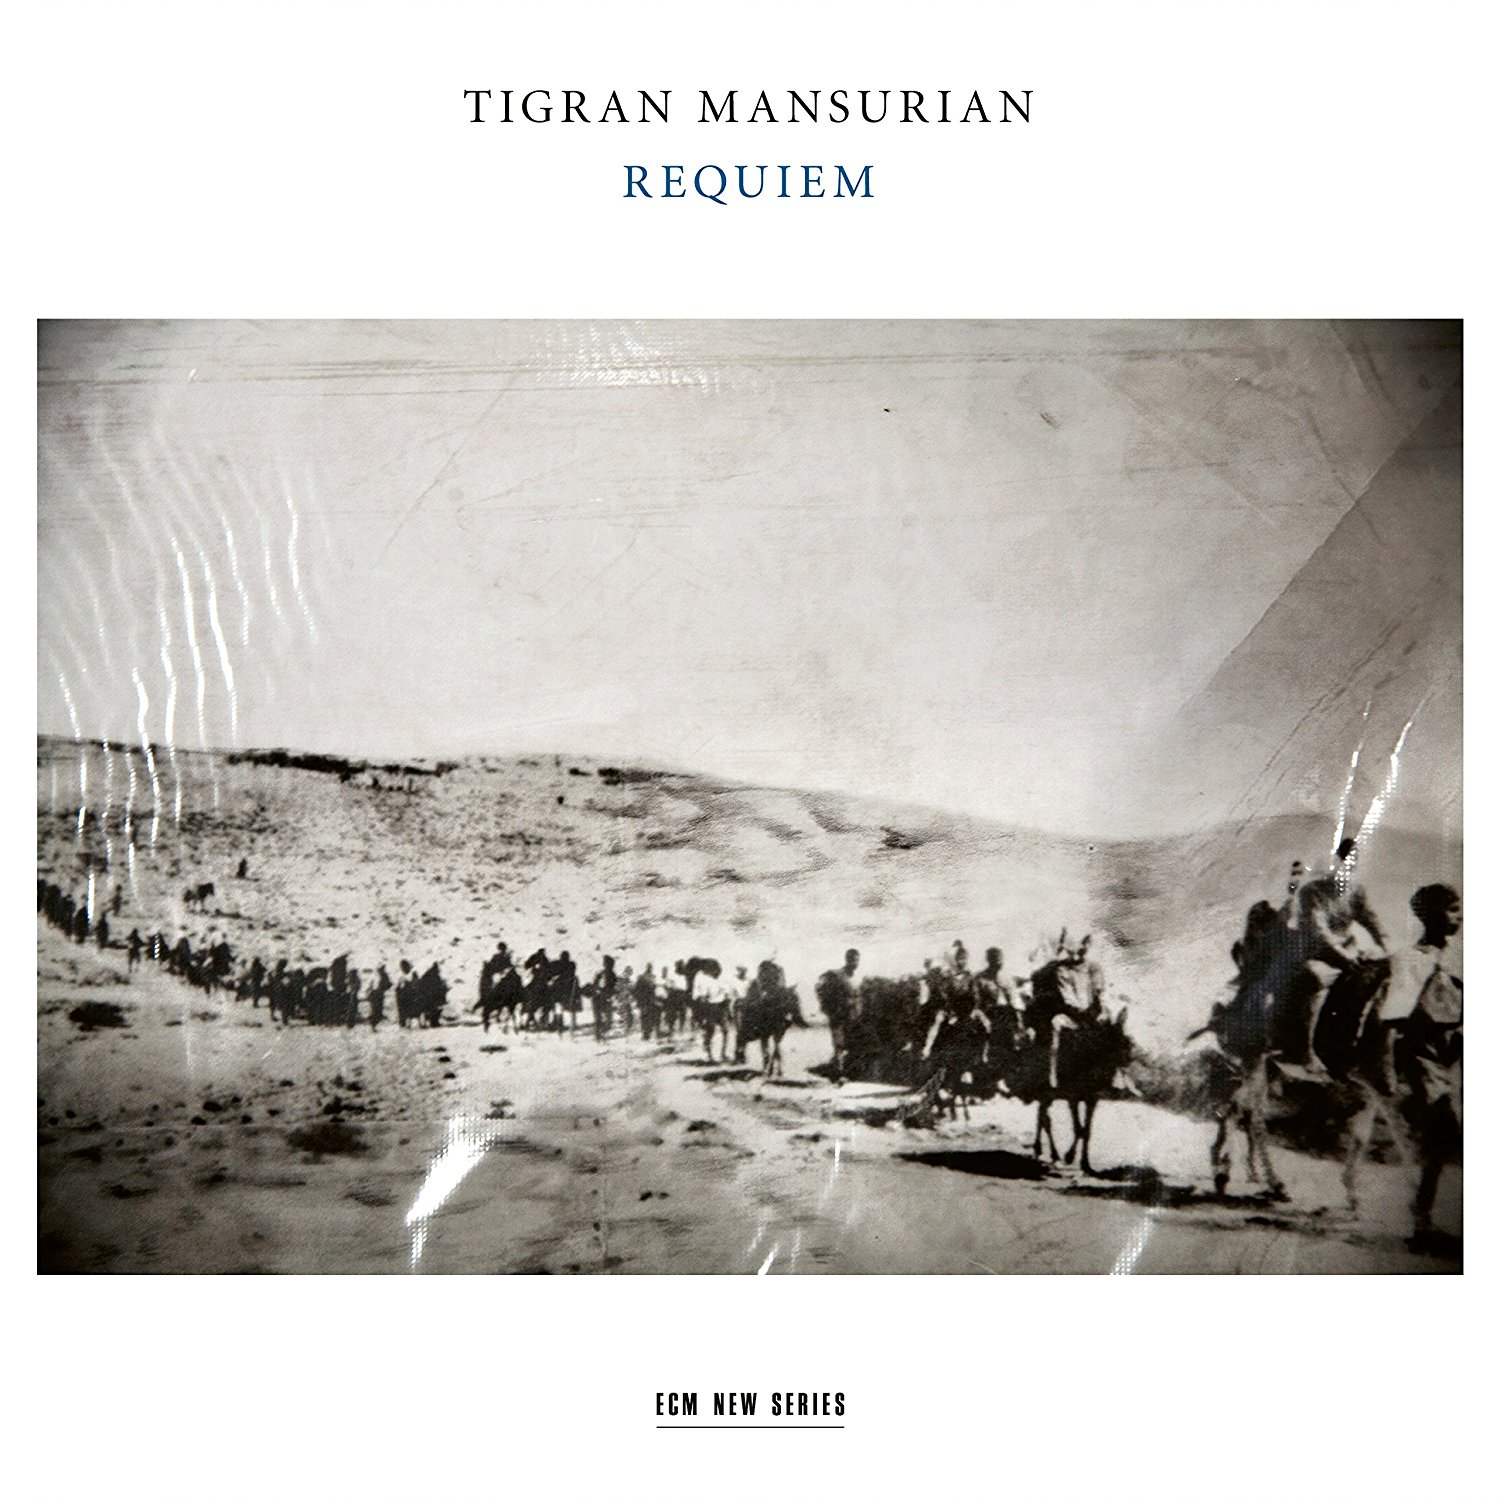 Mansurian's Requiem